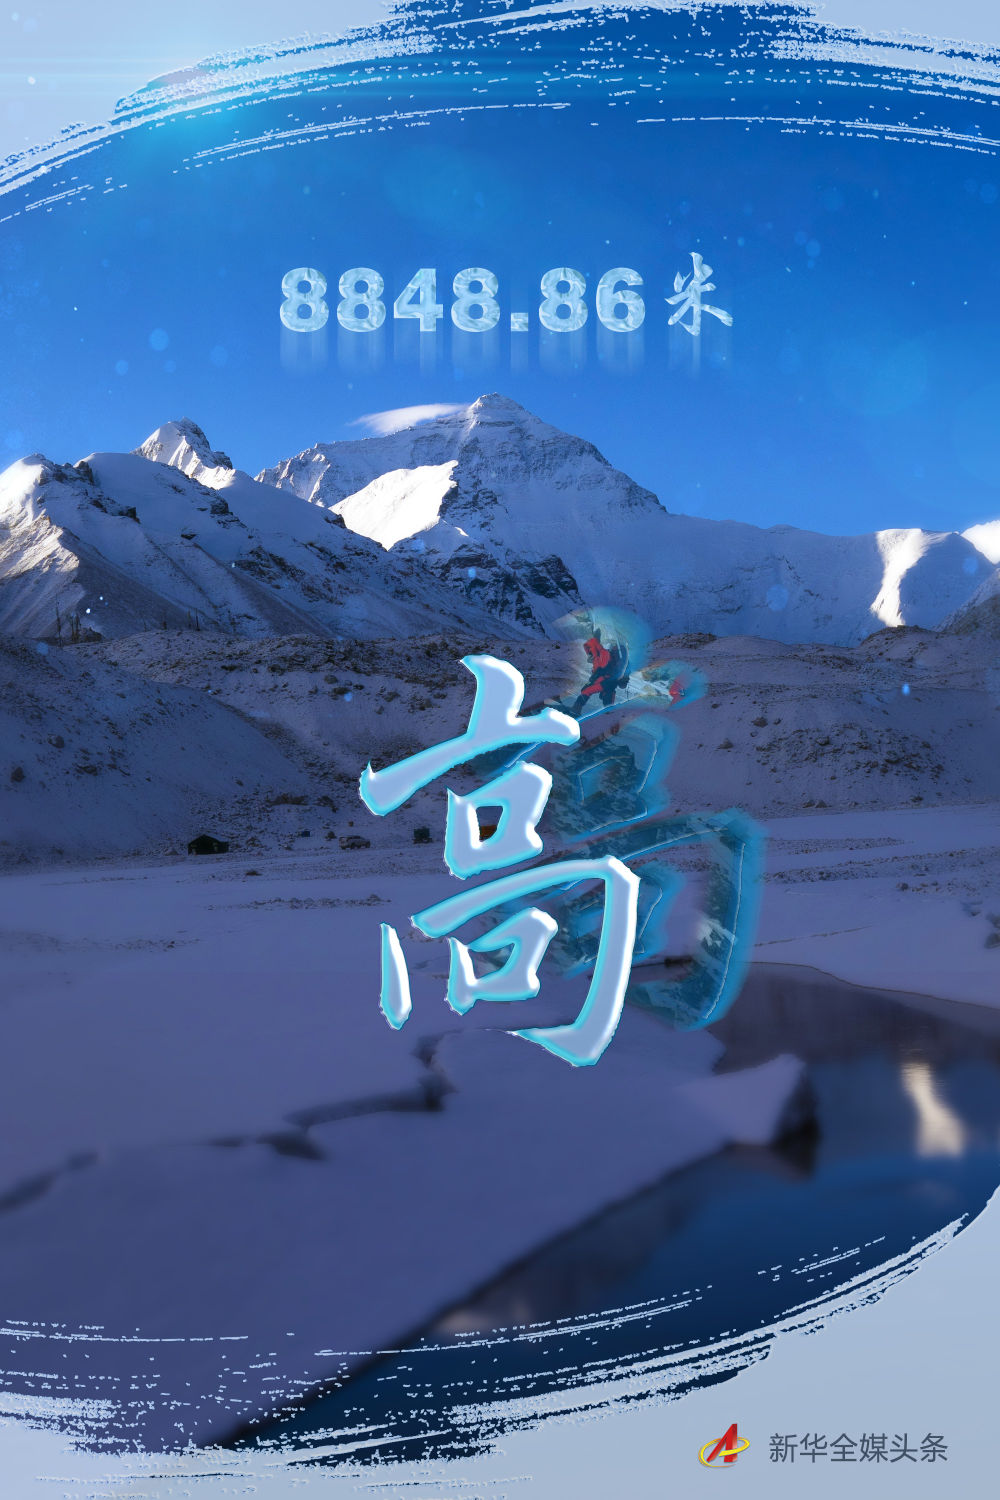 往更高处长、往长春北京倾向挪移——来自海拔8848.86米的陈说